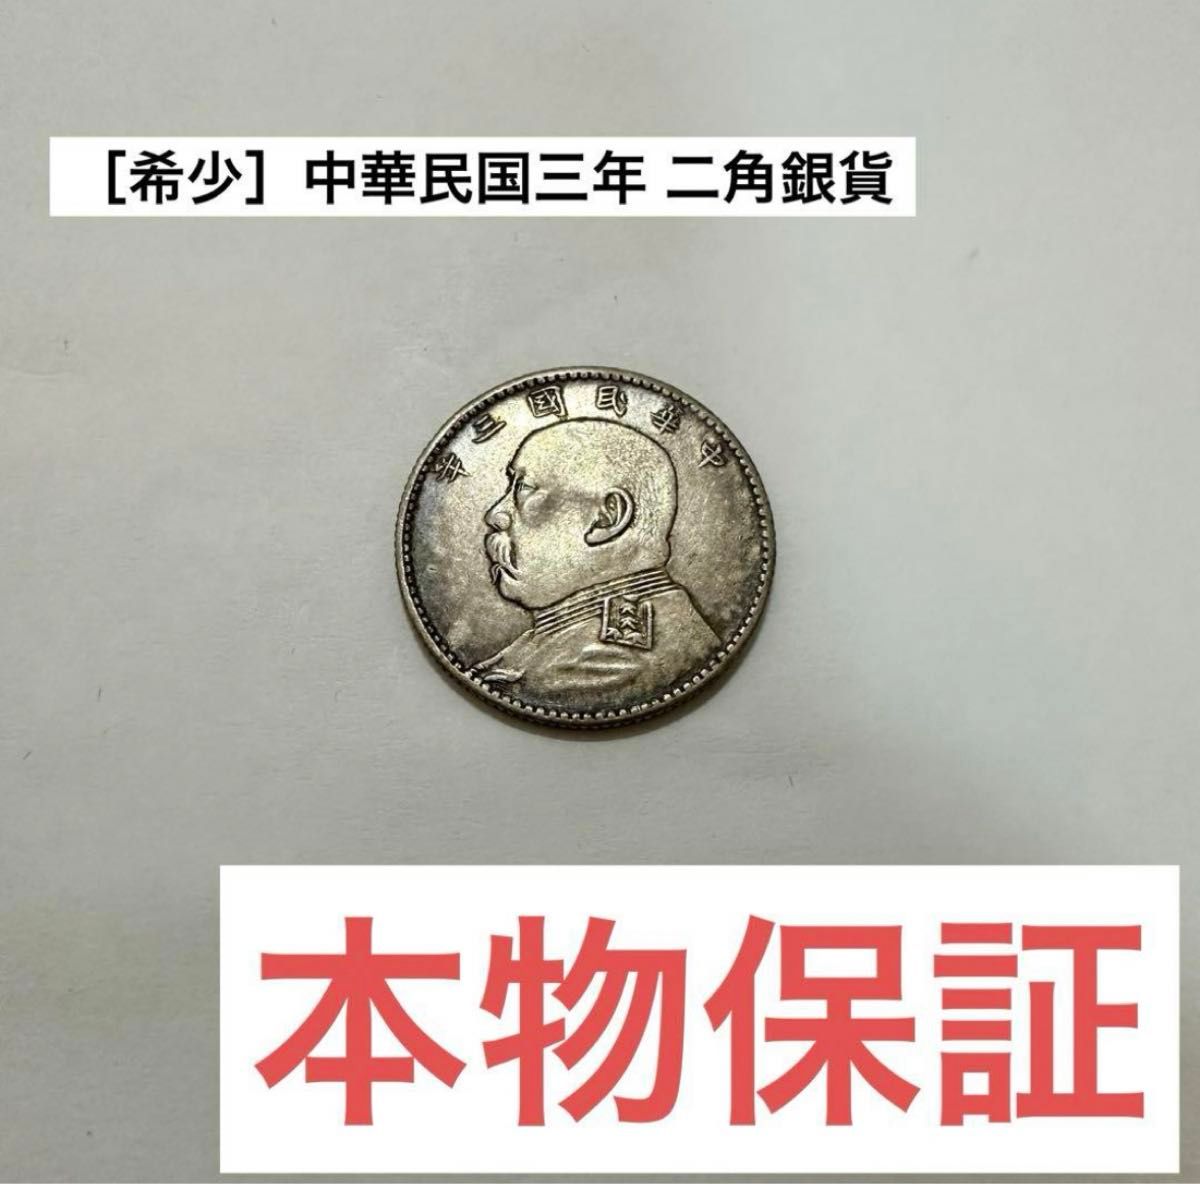 1 元ファットマン古い中国銀貨 - コレクション